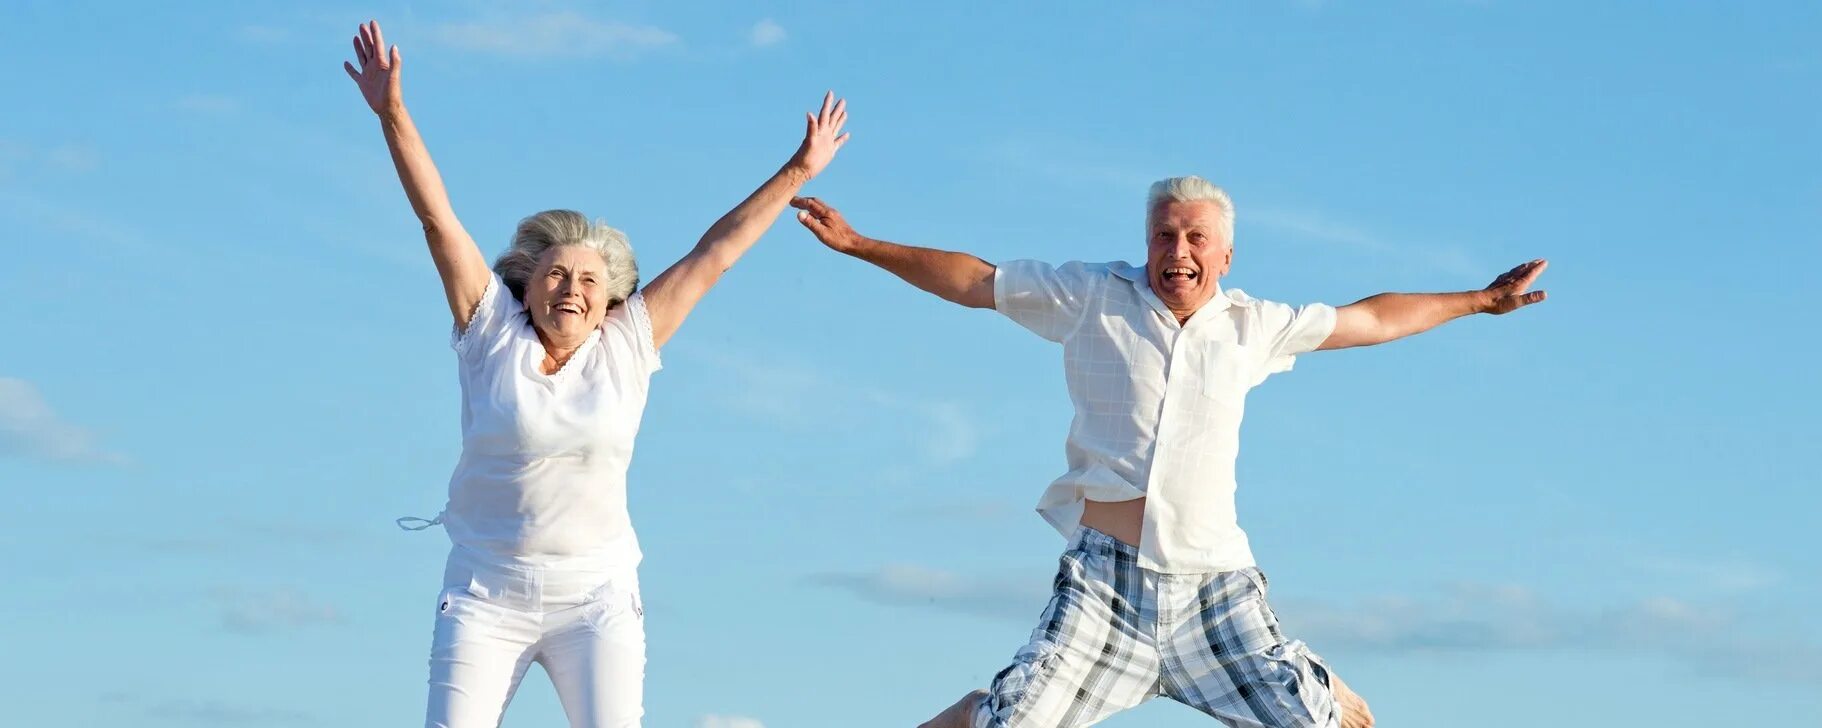 Долголетие м. Активный и здоровый образ жизни. Образ жизни и долголетие. Активное долголетие. Красивая старость здоровая.